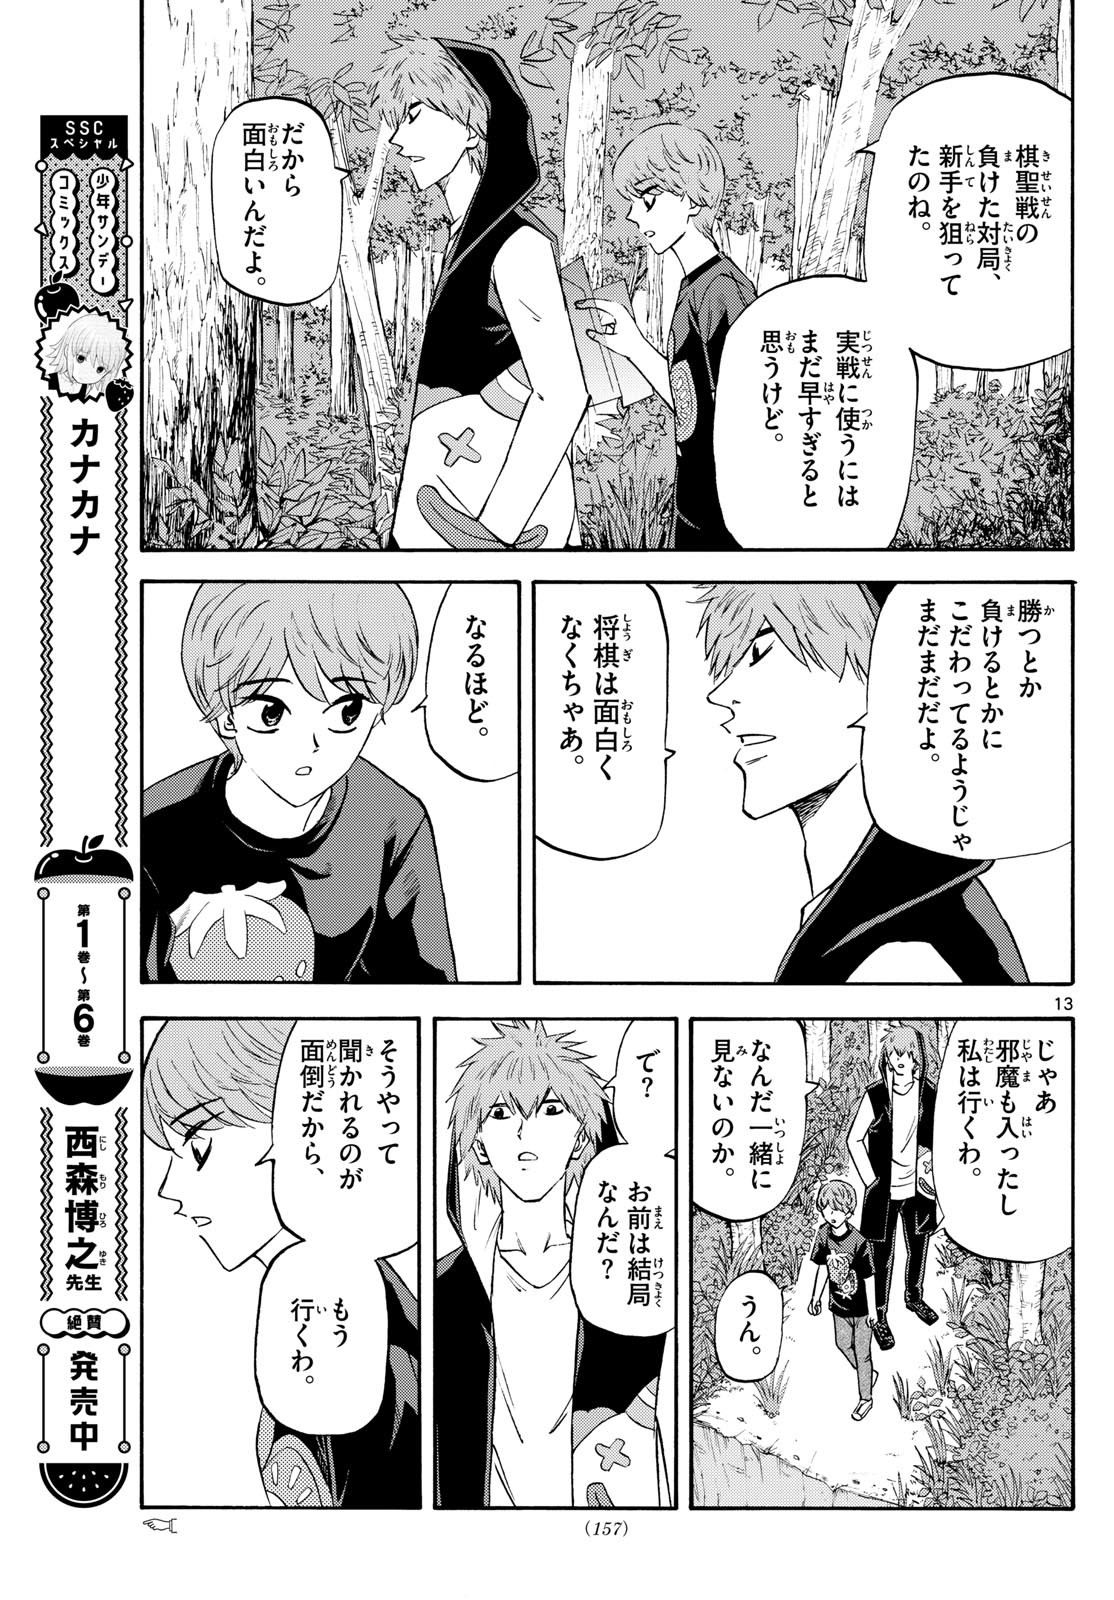 Ryu-to-Ichigo - Chapter 195 - Page 13